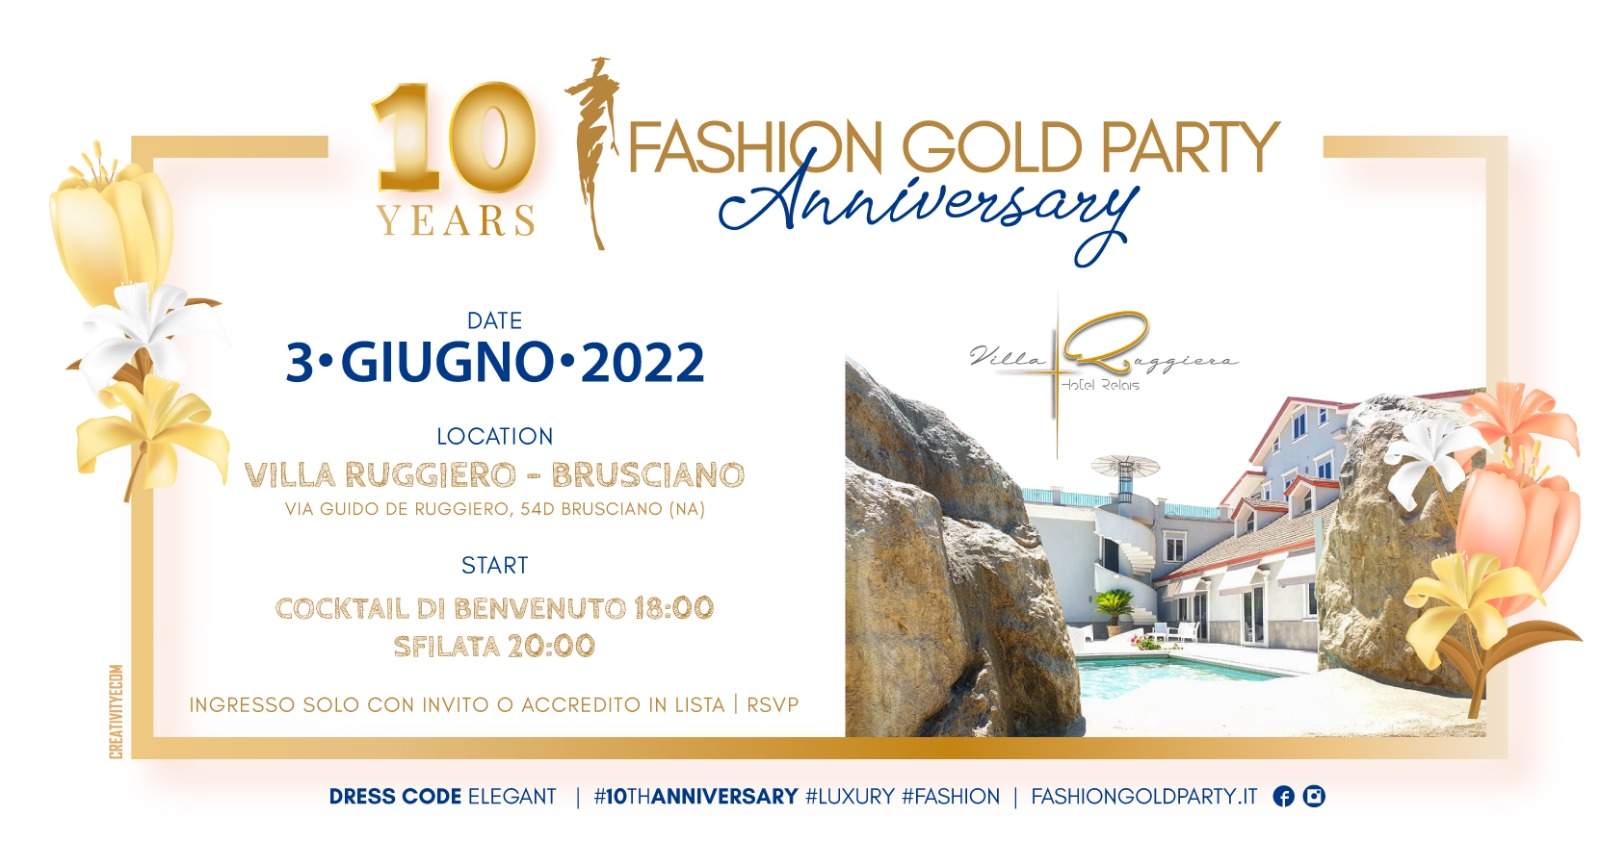 FASHION GOLD PARTY 10TH ANNIVERSARY VILLA RUGGIERO OSPITA L’EVENTO IL 3 GIUGNO 2022 